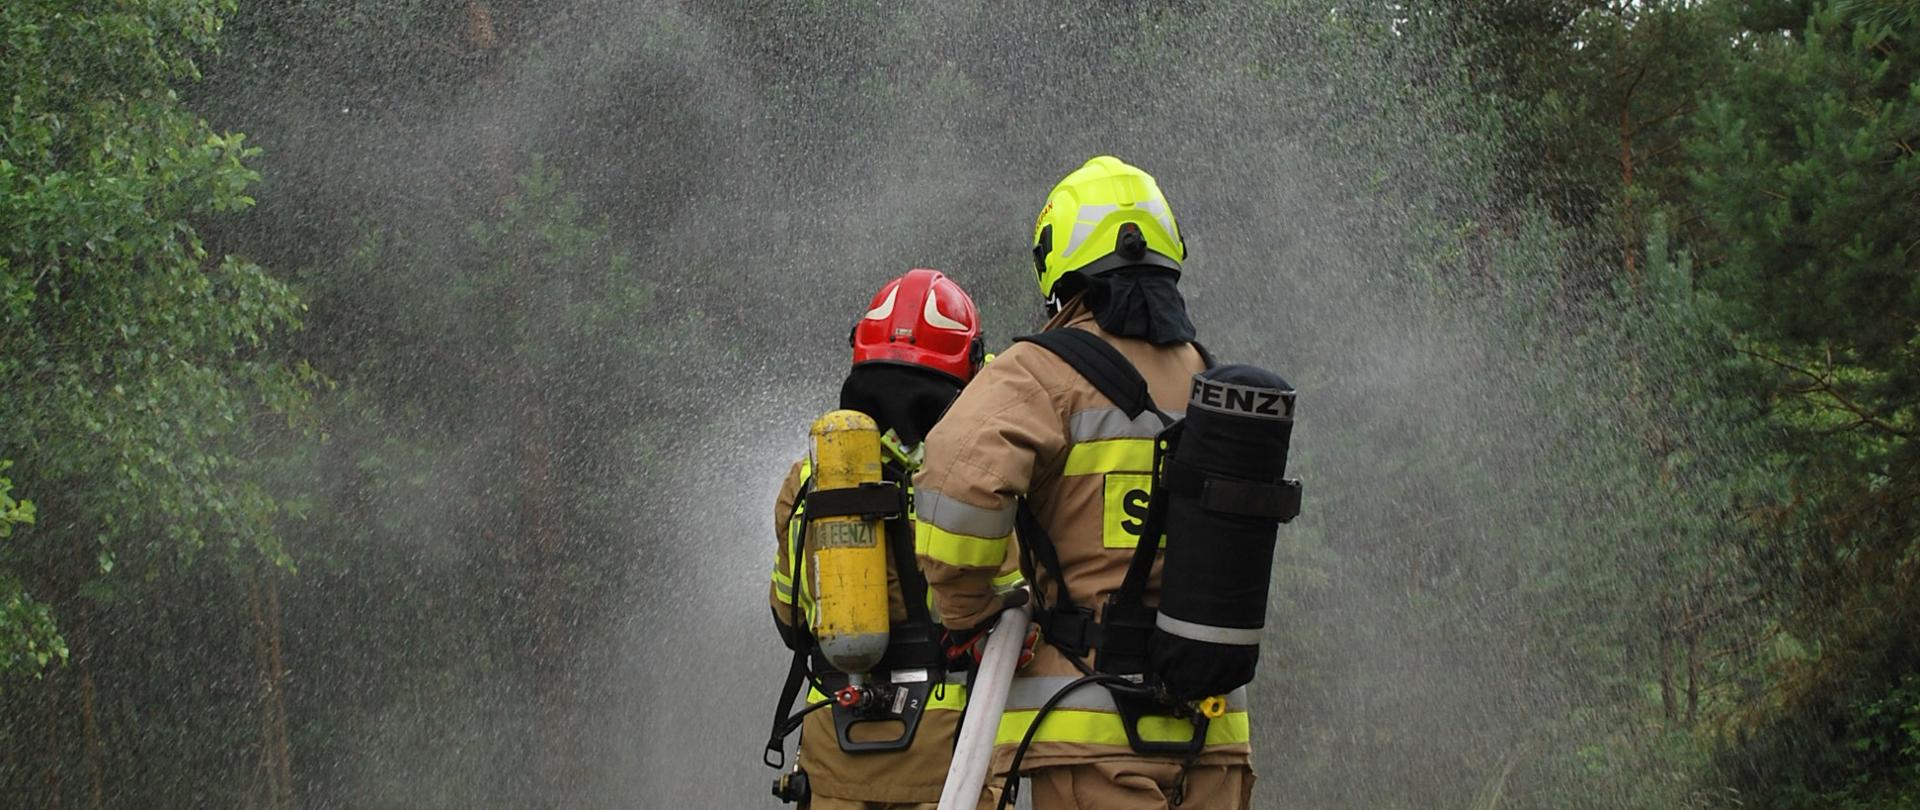 Na zdjęciu dwóch strażaków w ubraniu specjalnym podaje prąd wody w natarciu